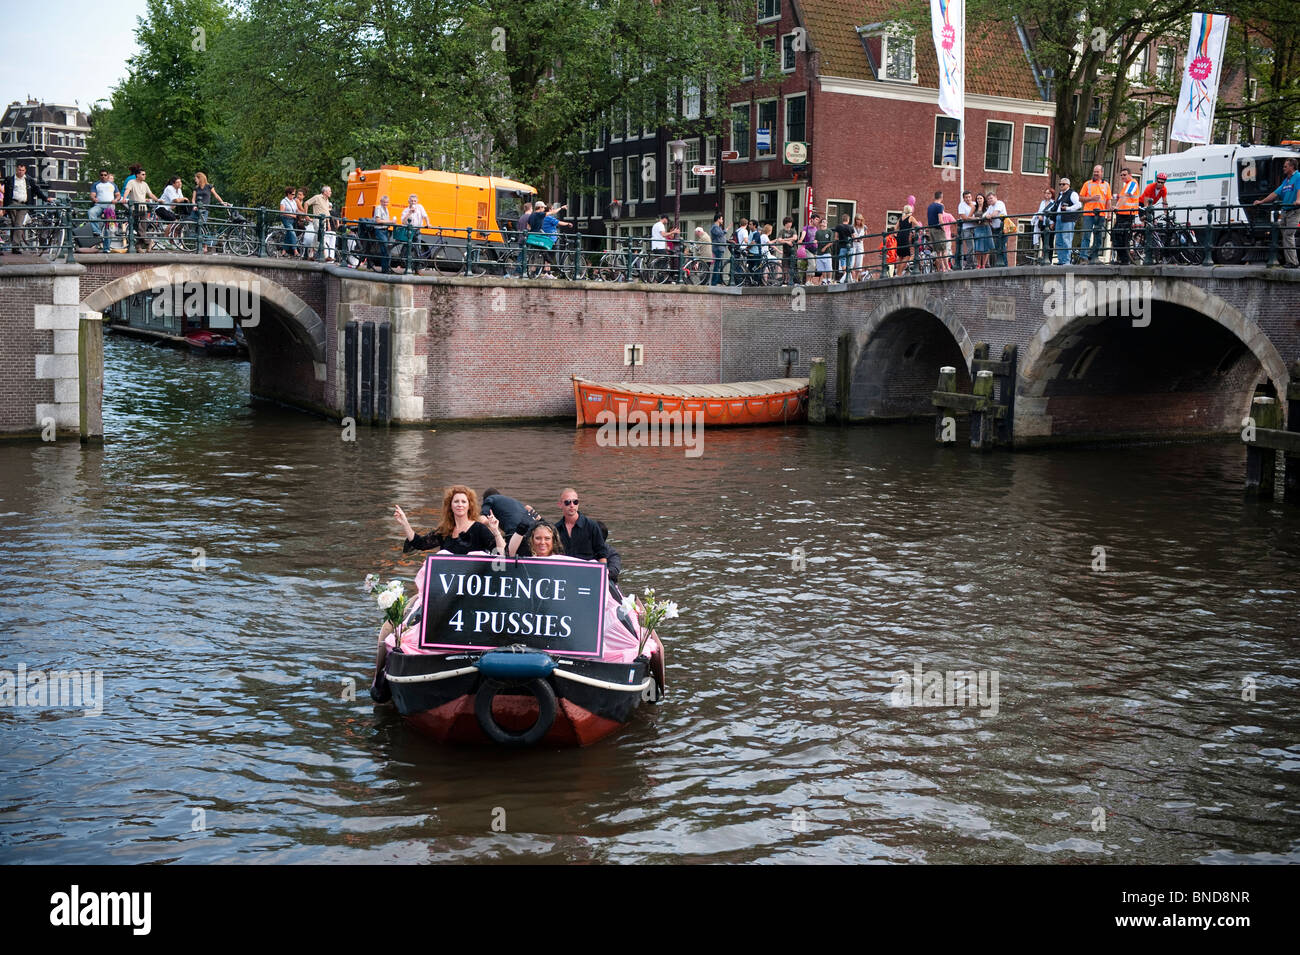 Nederland, Amsterdam, 1 Augustus 2009 la parade gay annuelle flotter sur le Prinsengracht à Amsterdam. Banque D'Images